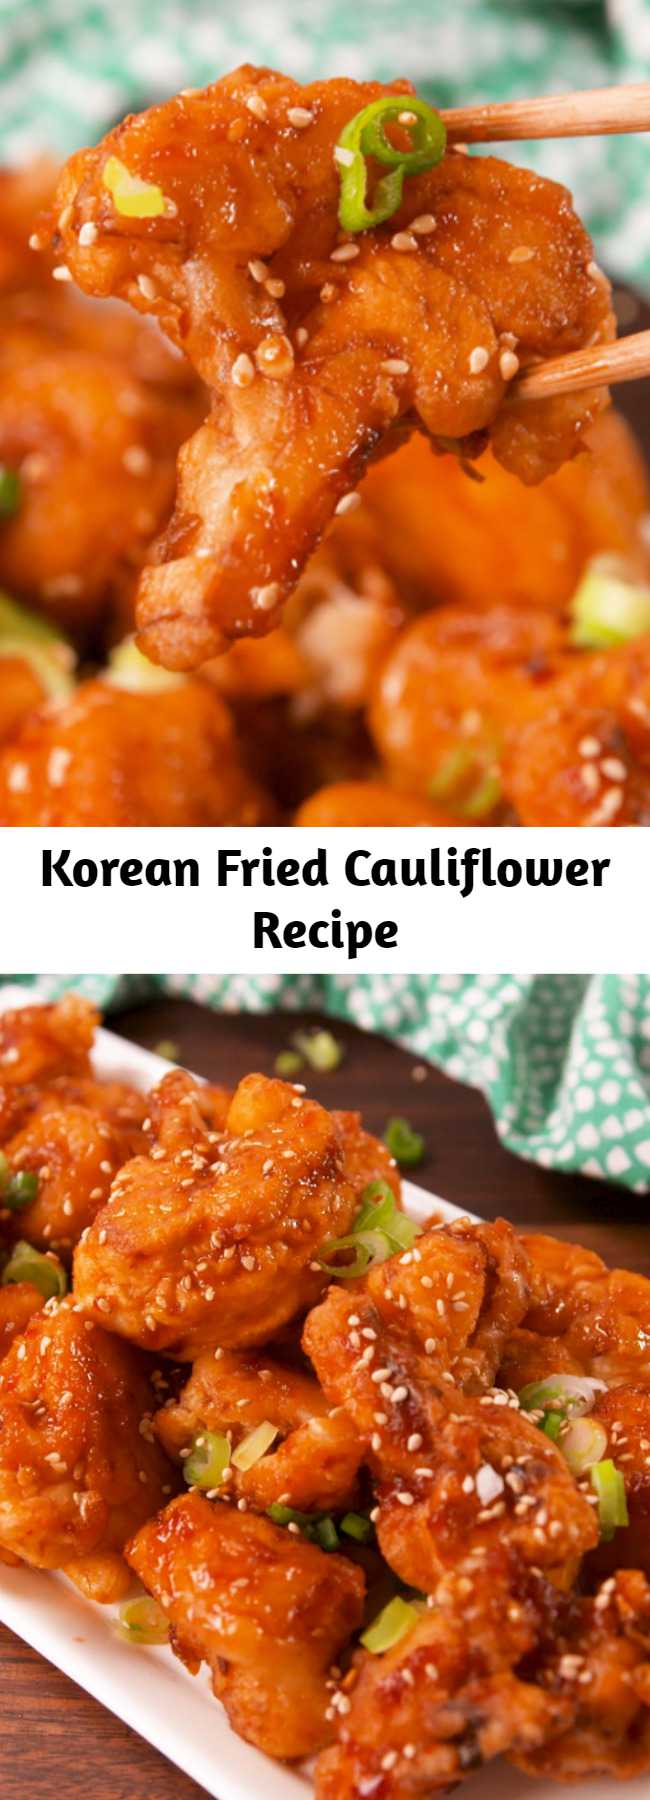 Korean Fried Cauliflower Recipe - Making your own tempura batter is what makes this dish. #food #easyrecipe #vegetarian #familydinner #dinner
